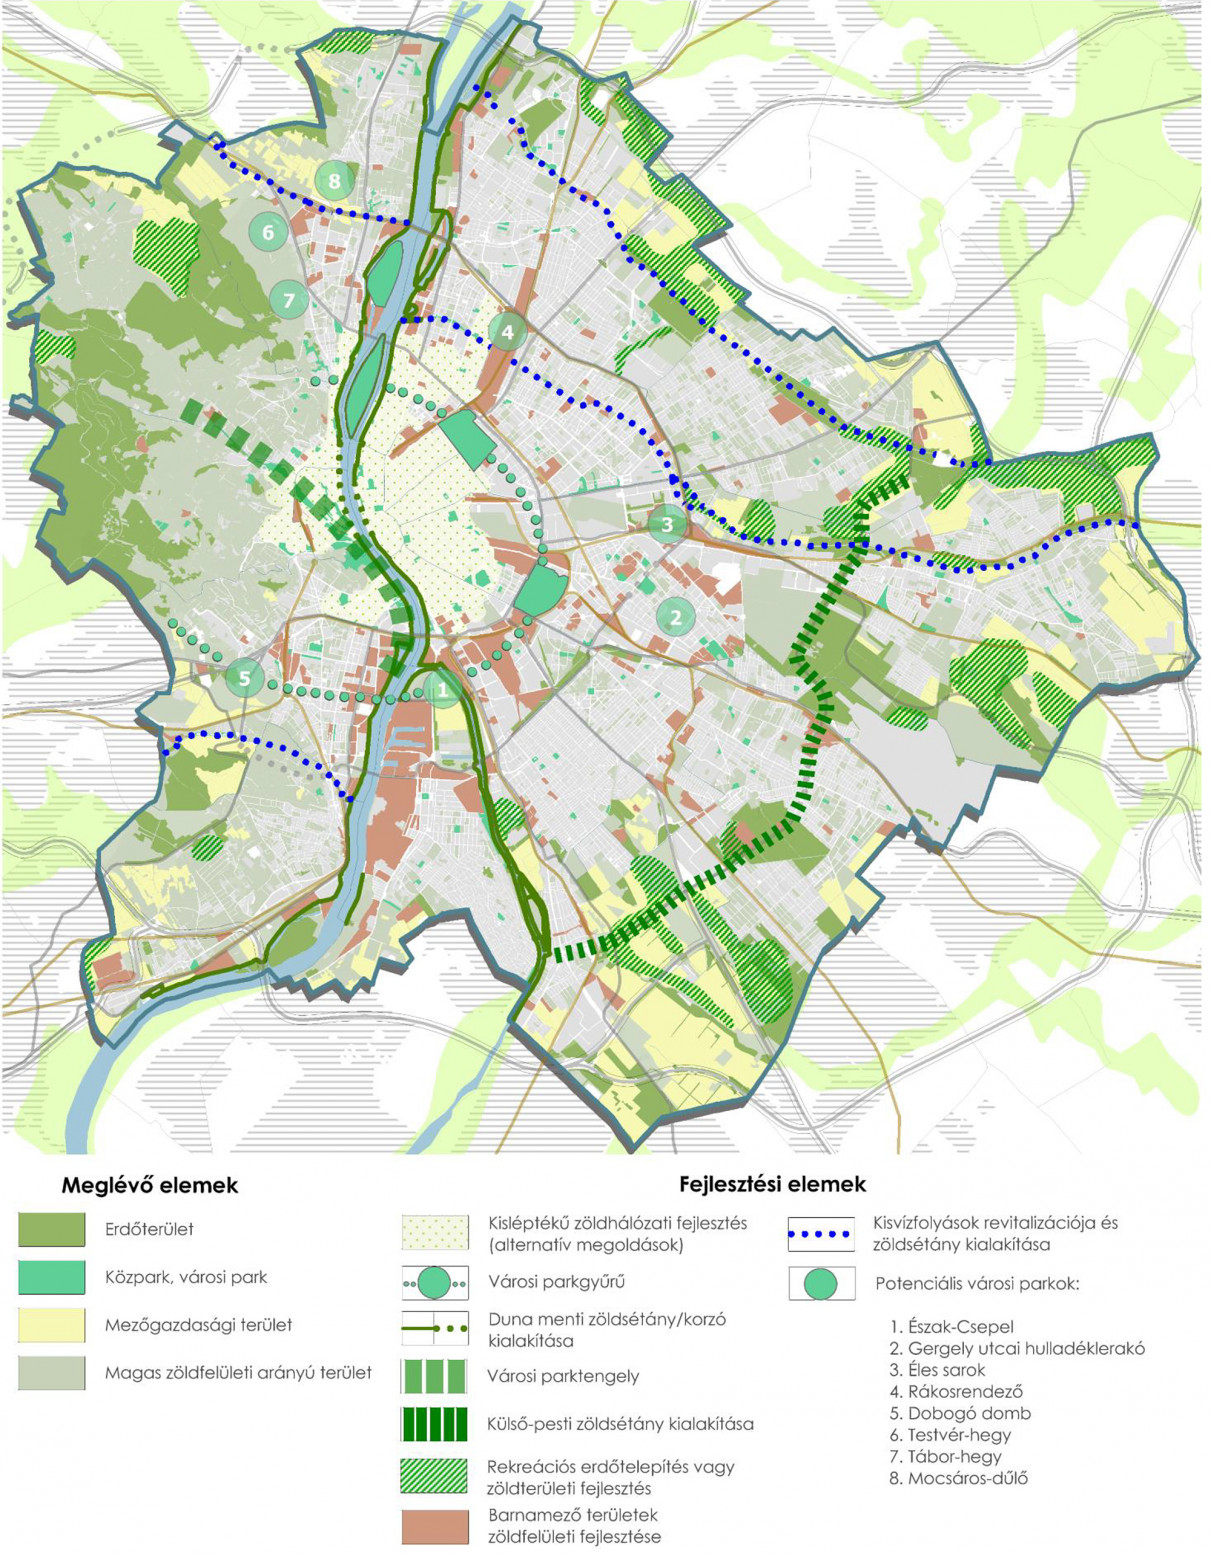 A budapesti zöldinfrastruktúra fejlesztési céljai közt jól láthatóan szerepel az egyes, városi jelentőségű zöldfelületeket összekötő elemek, mint a zöldsétányok kialakítása, kisvízfolyások revitalizációja és potenciális városi parkok kialakítása.